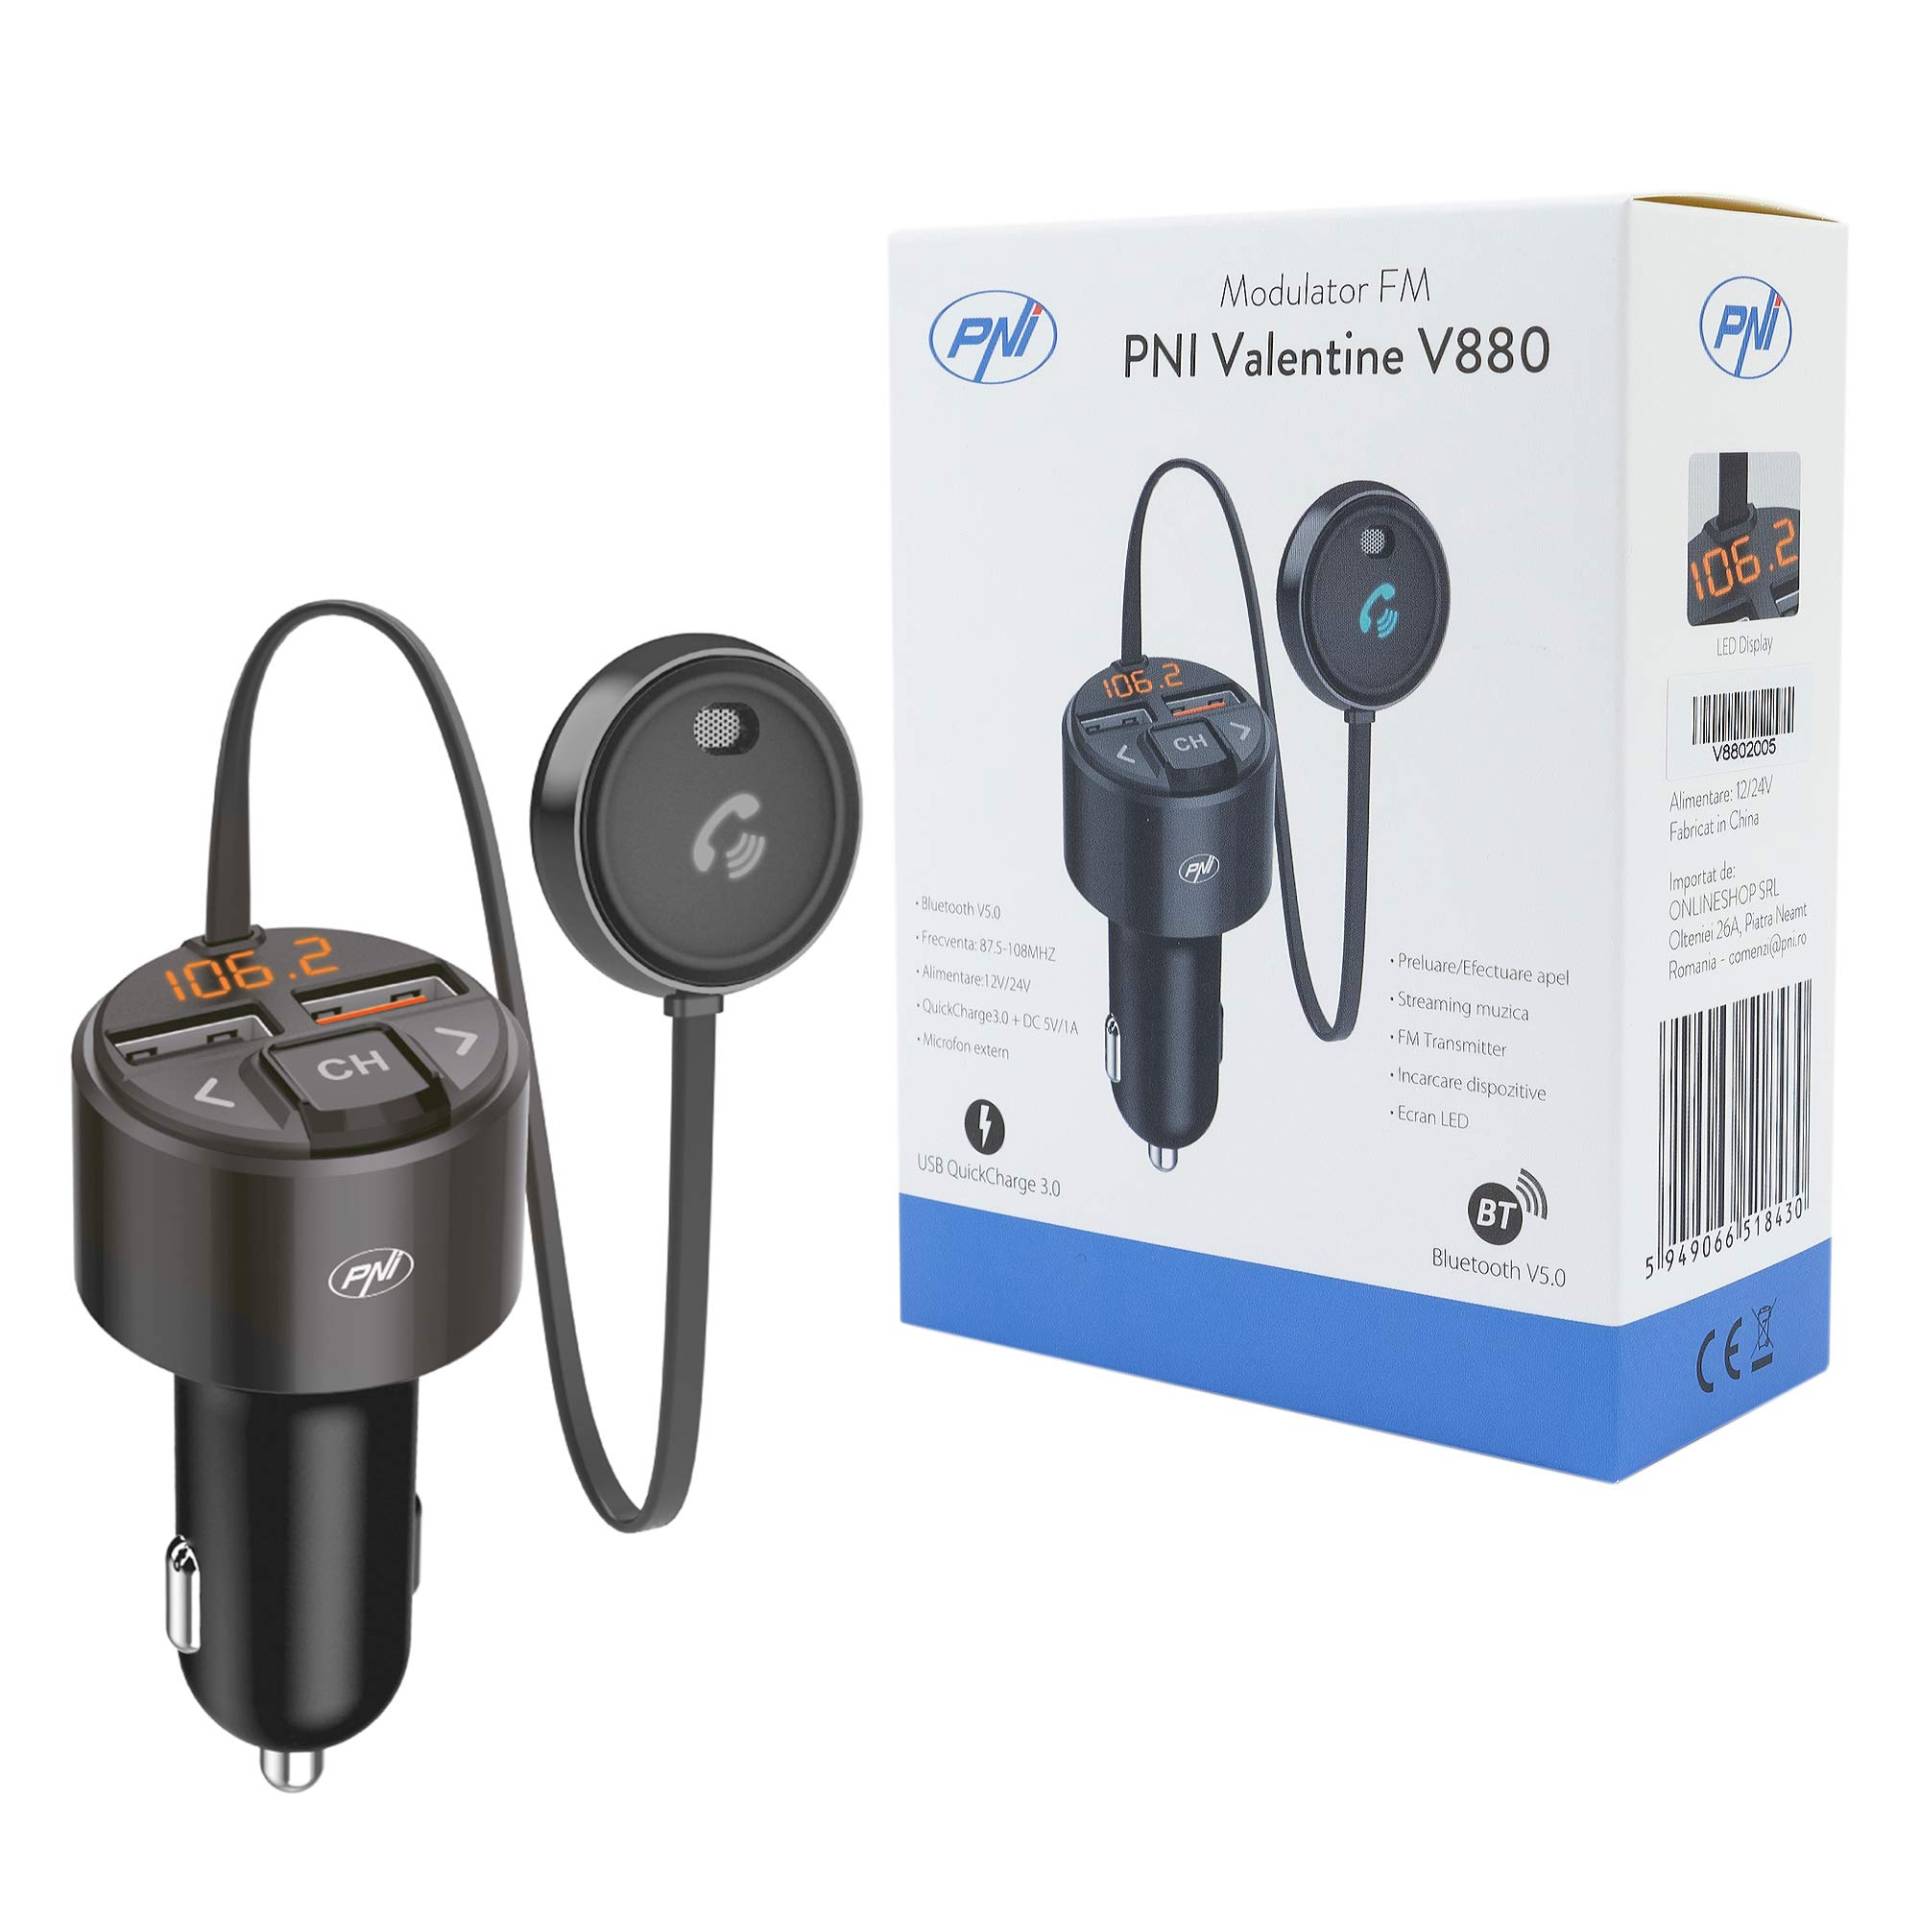 PNI Valentine V880 FM Modulator mit Mikrofon, Bluetooth 5.0, MP3 Player, FM Sender, Zwei USB Anschlüssen, schnelles Aufladen mobiler Geräte über QC3.0, kompatibel mit Siri und Google Assistant von PNI